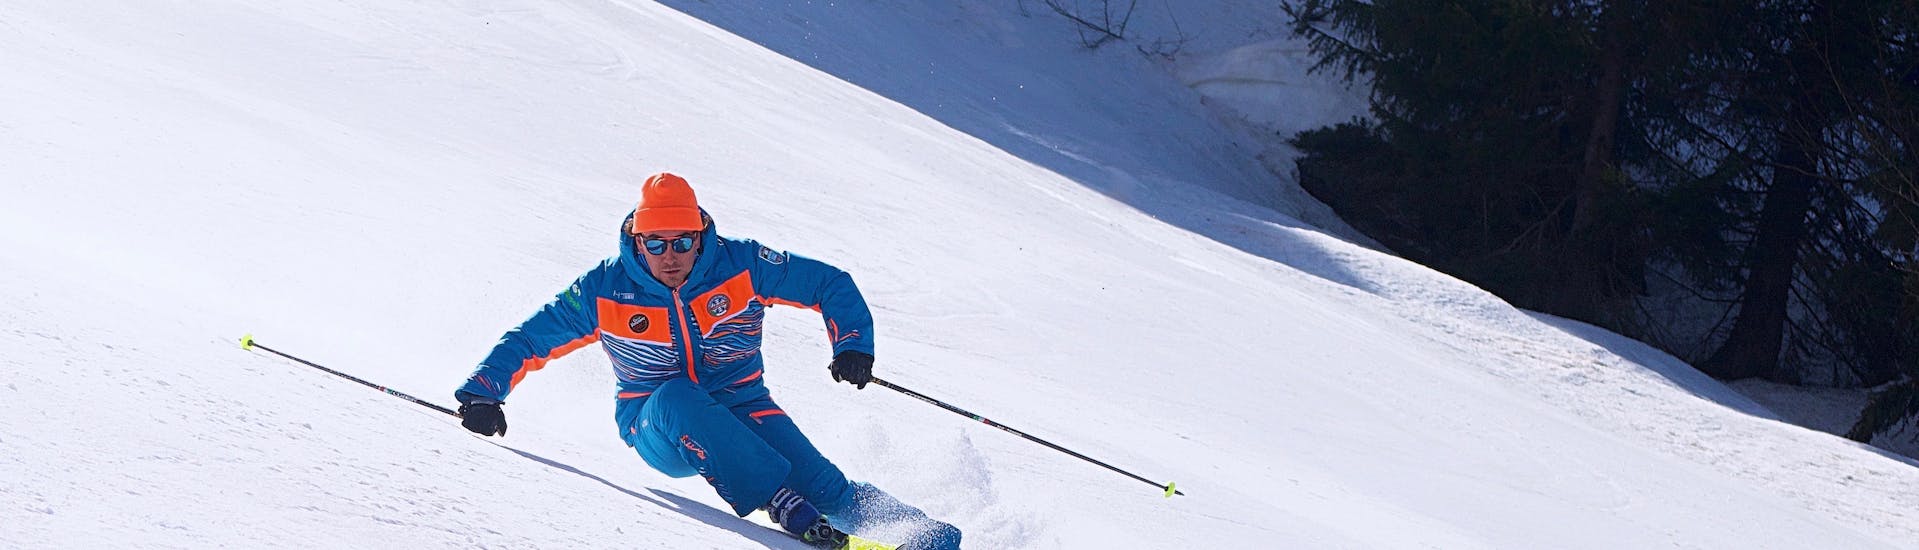 Maestro di sci che tira una curva a Limone dopo una delle lezioni di sci per adulti per sciatori avanzati.